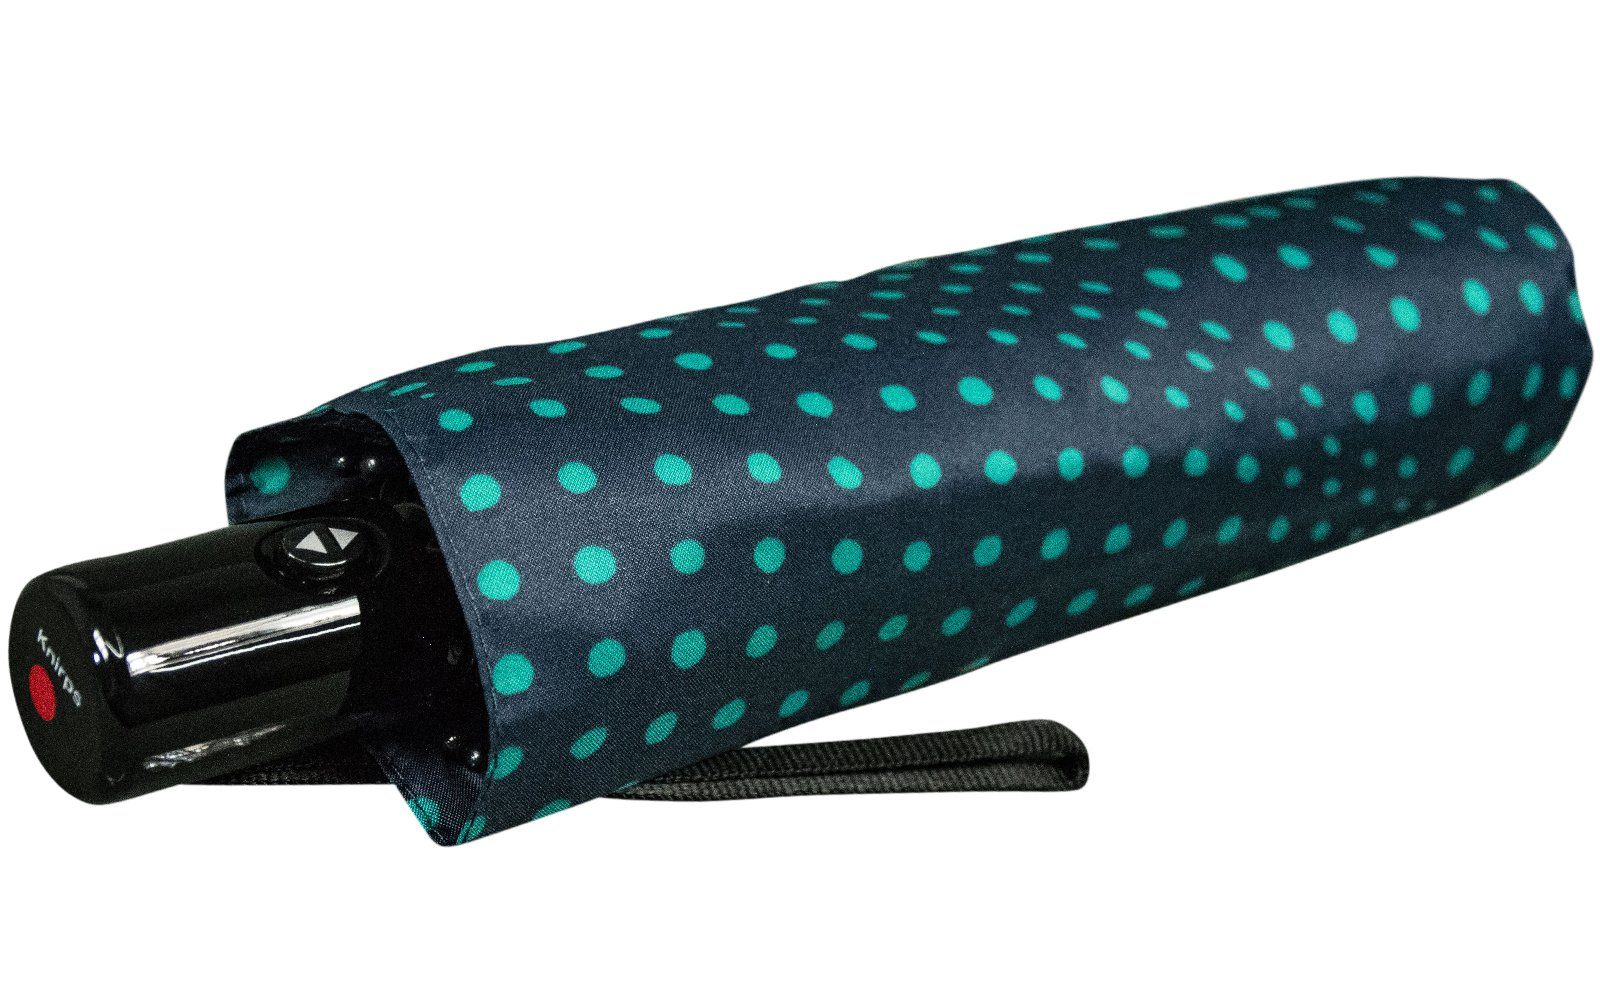 Design Difference - mit Knirps® kompakter türkis leichter, Auf-Zu-Automatik, schönes navy Schirm Taschenregenschirm Punkte